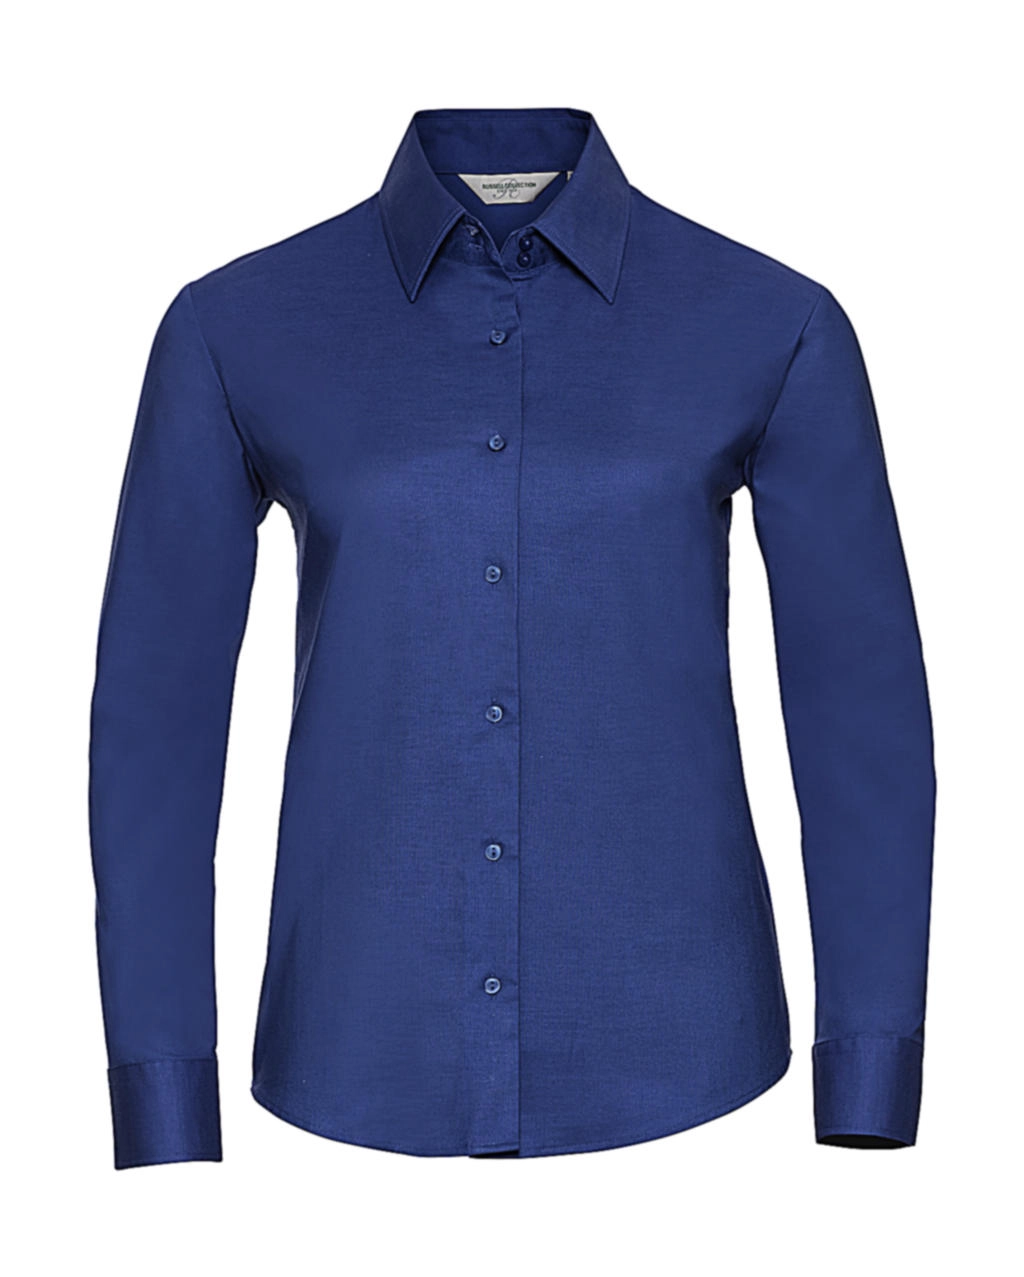 Ladies` Classic Oxford Shirt LS zum Besticken und Bedrucken in der Farbe Aztec Blue mit Ihren Logo, Schriftzug oder Motiv.